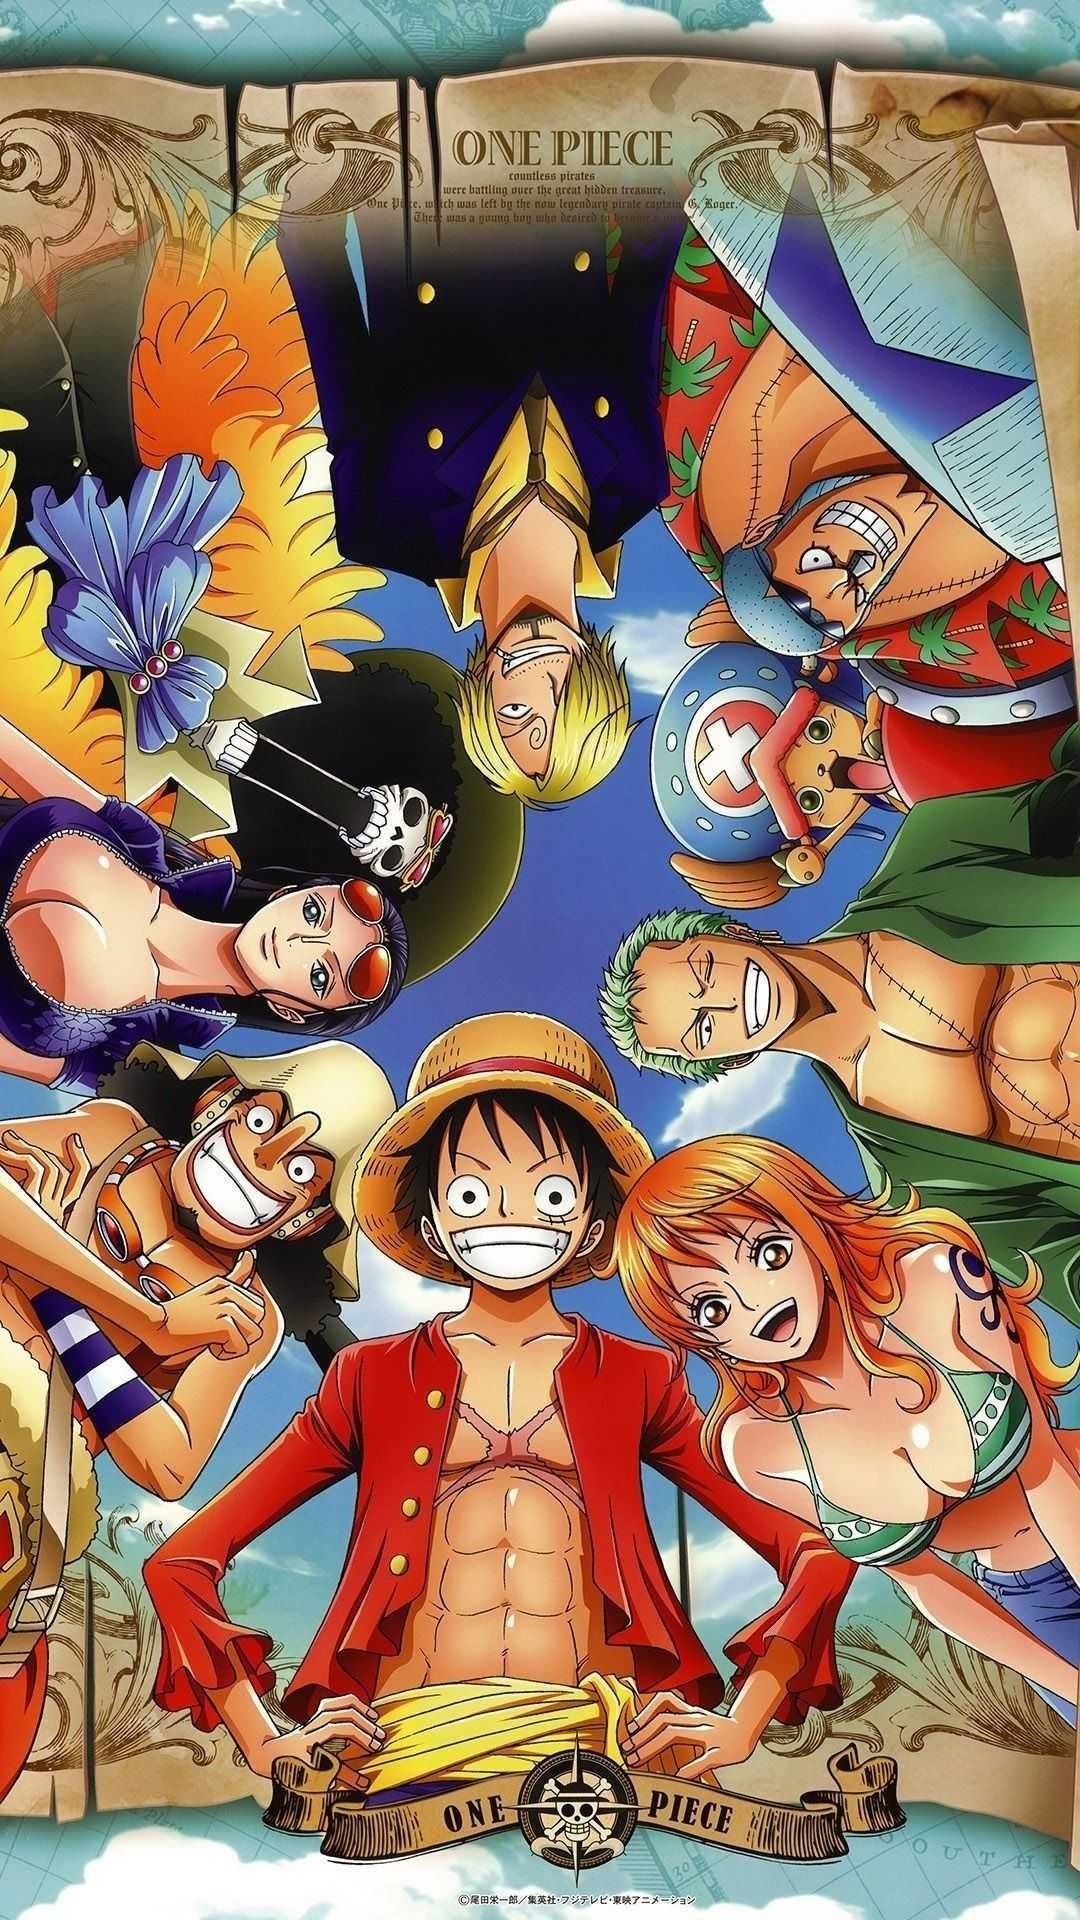 Anime One Piece 4k Ultra HD Wallpaper by nourssj3